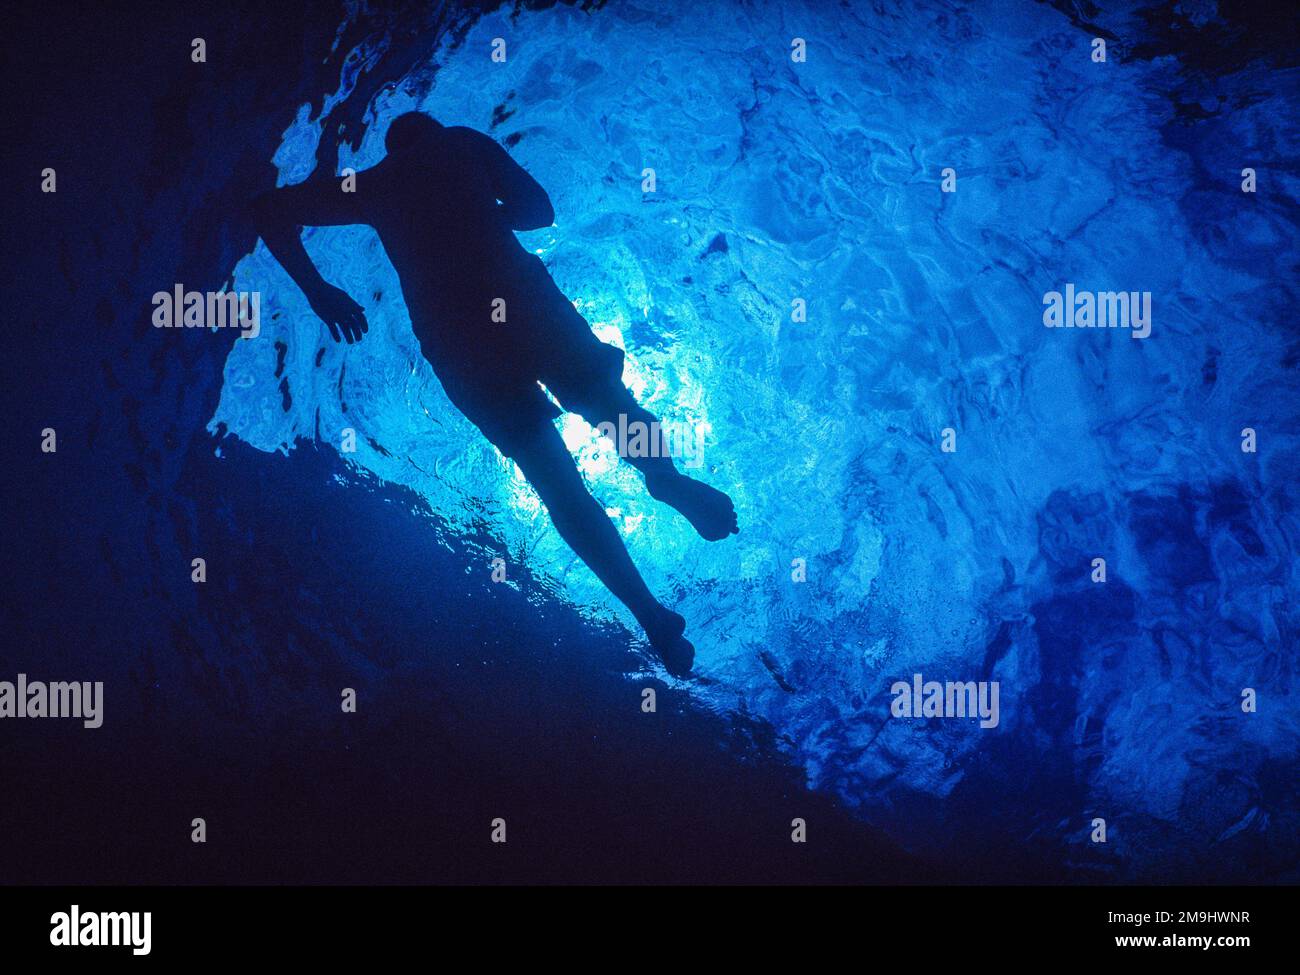 Swimmer underwater Stock Photo